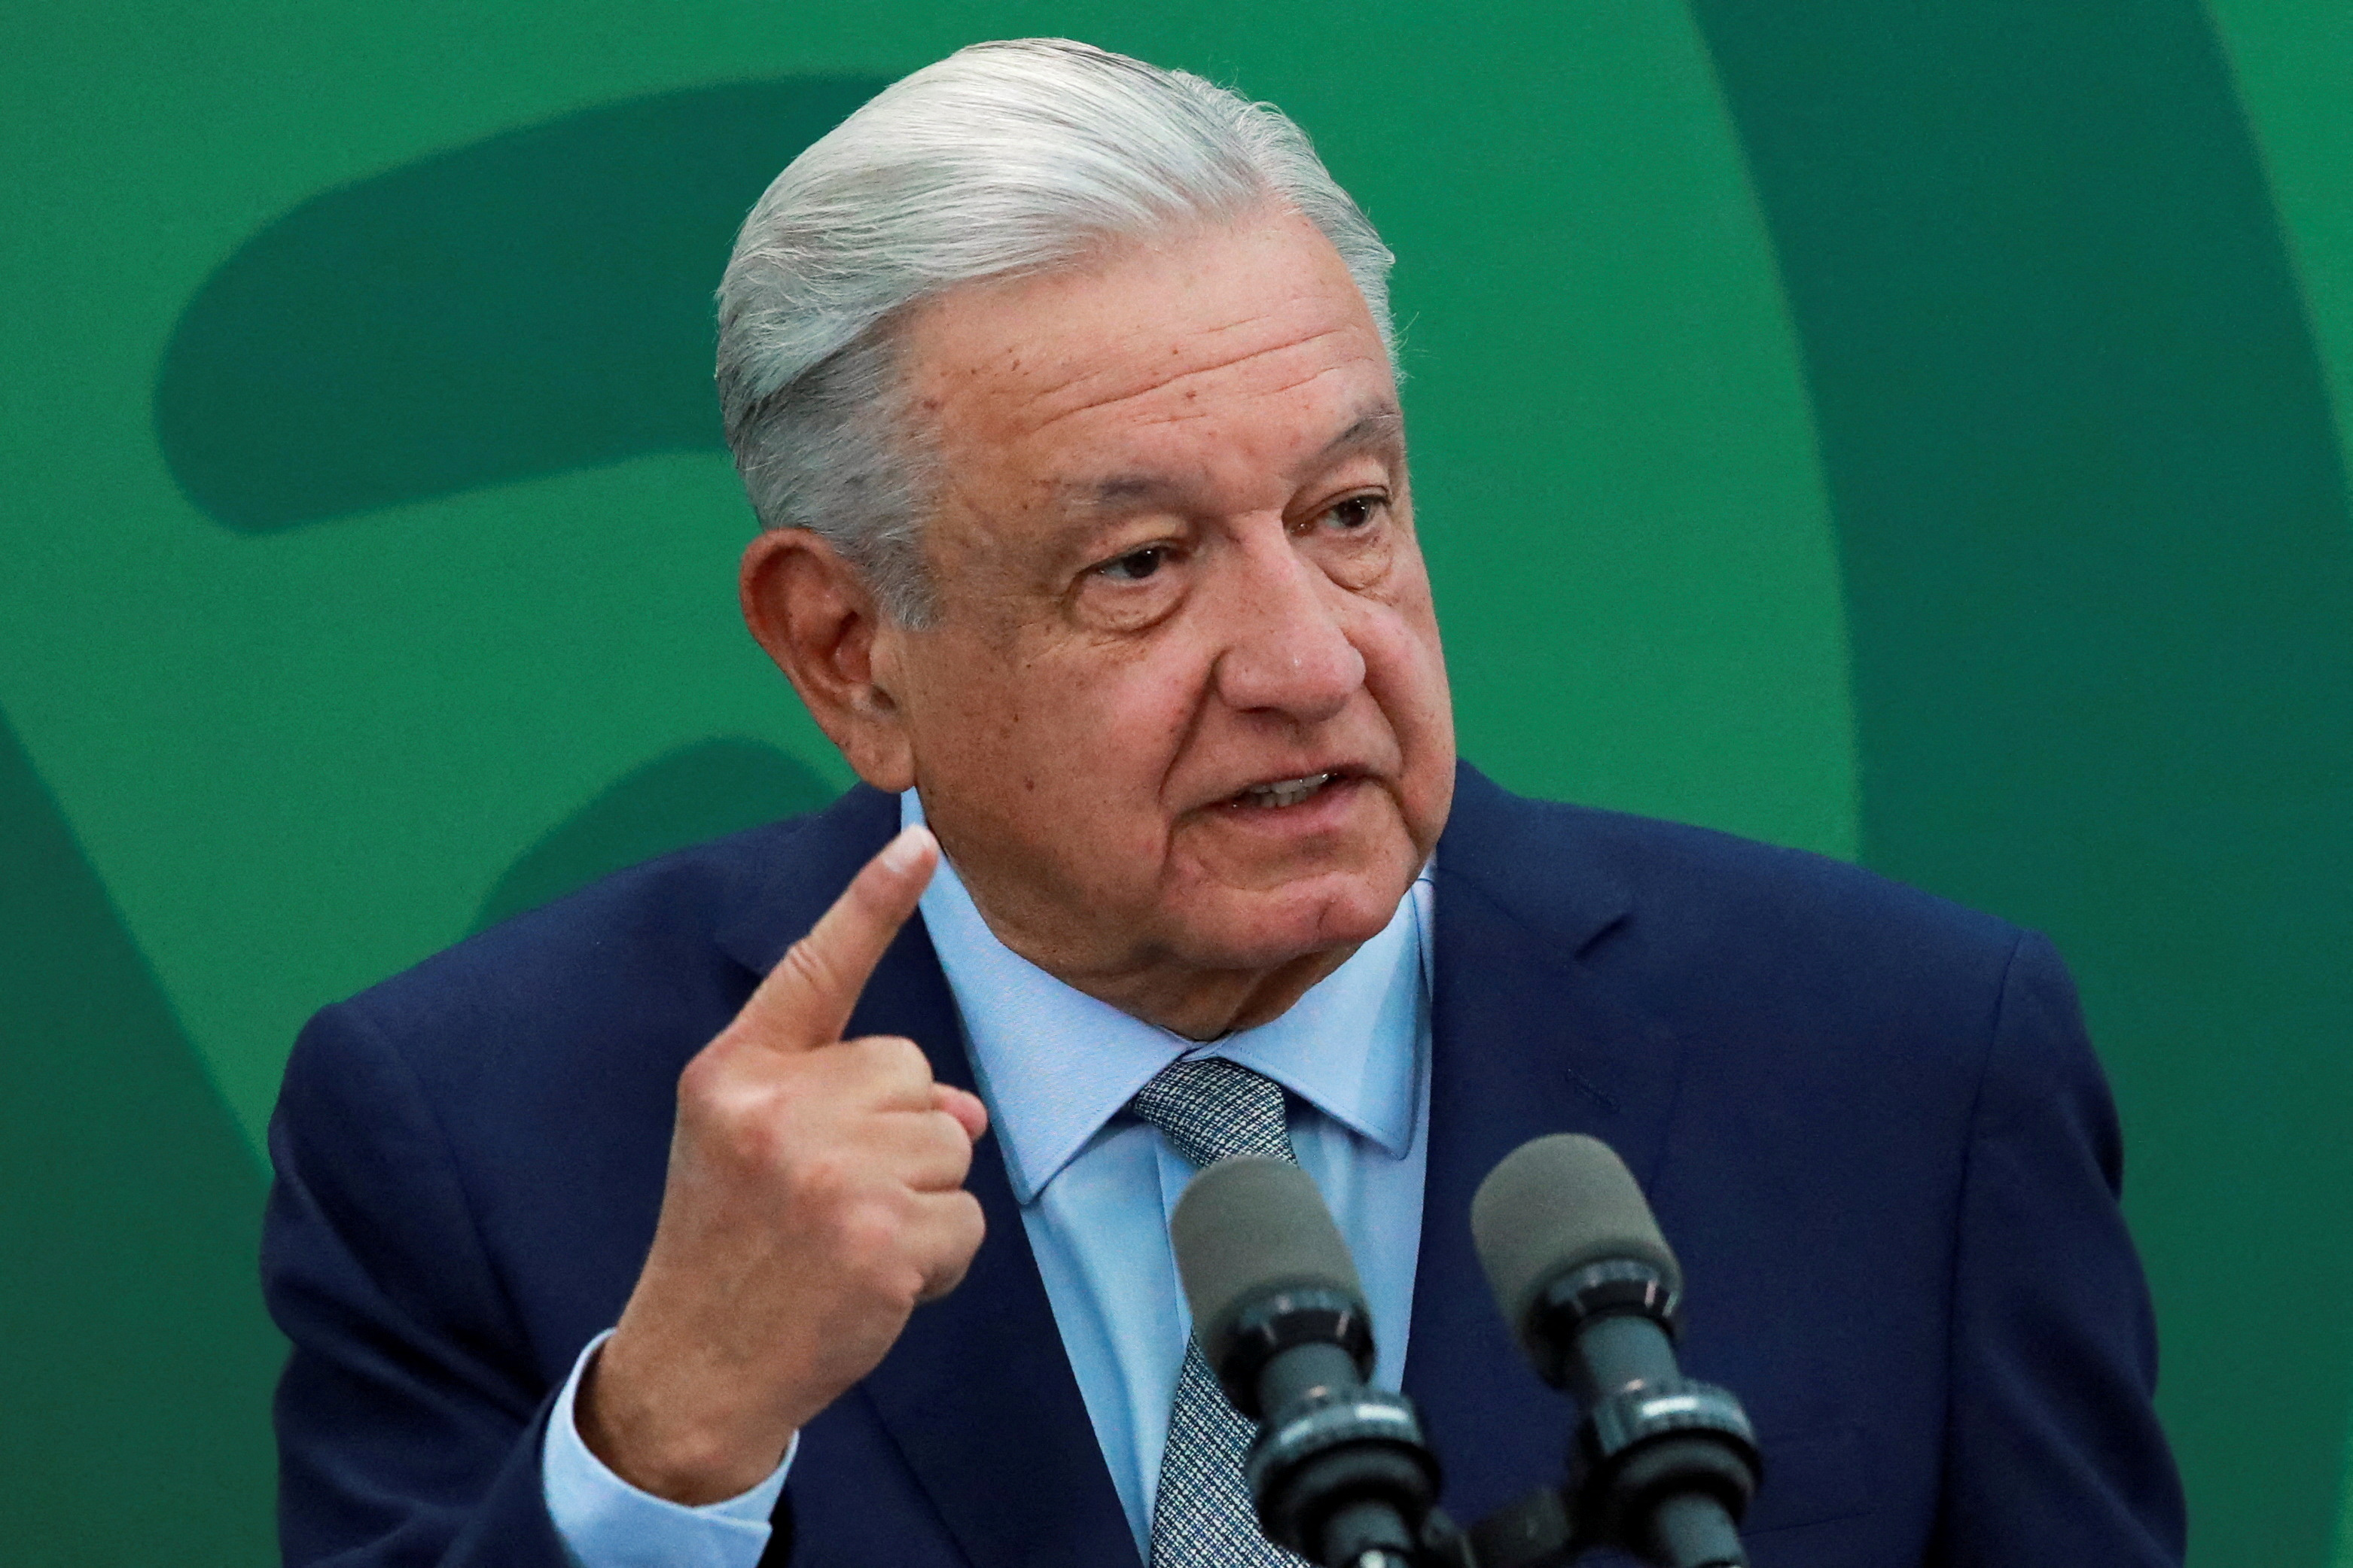 El presidente de México, Andrés Manuel López Obrador, habla durante una conferencia de prensa en la Secretaría de Seguridad y Protección Civil en la Ciudad de México, México, el 9 de marzo de 2023. Foto: REUTERS/Henry Romero